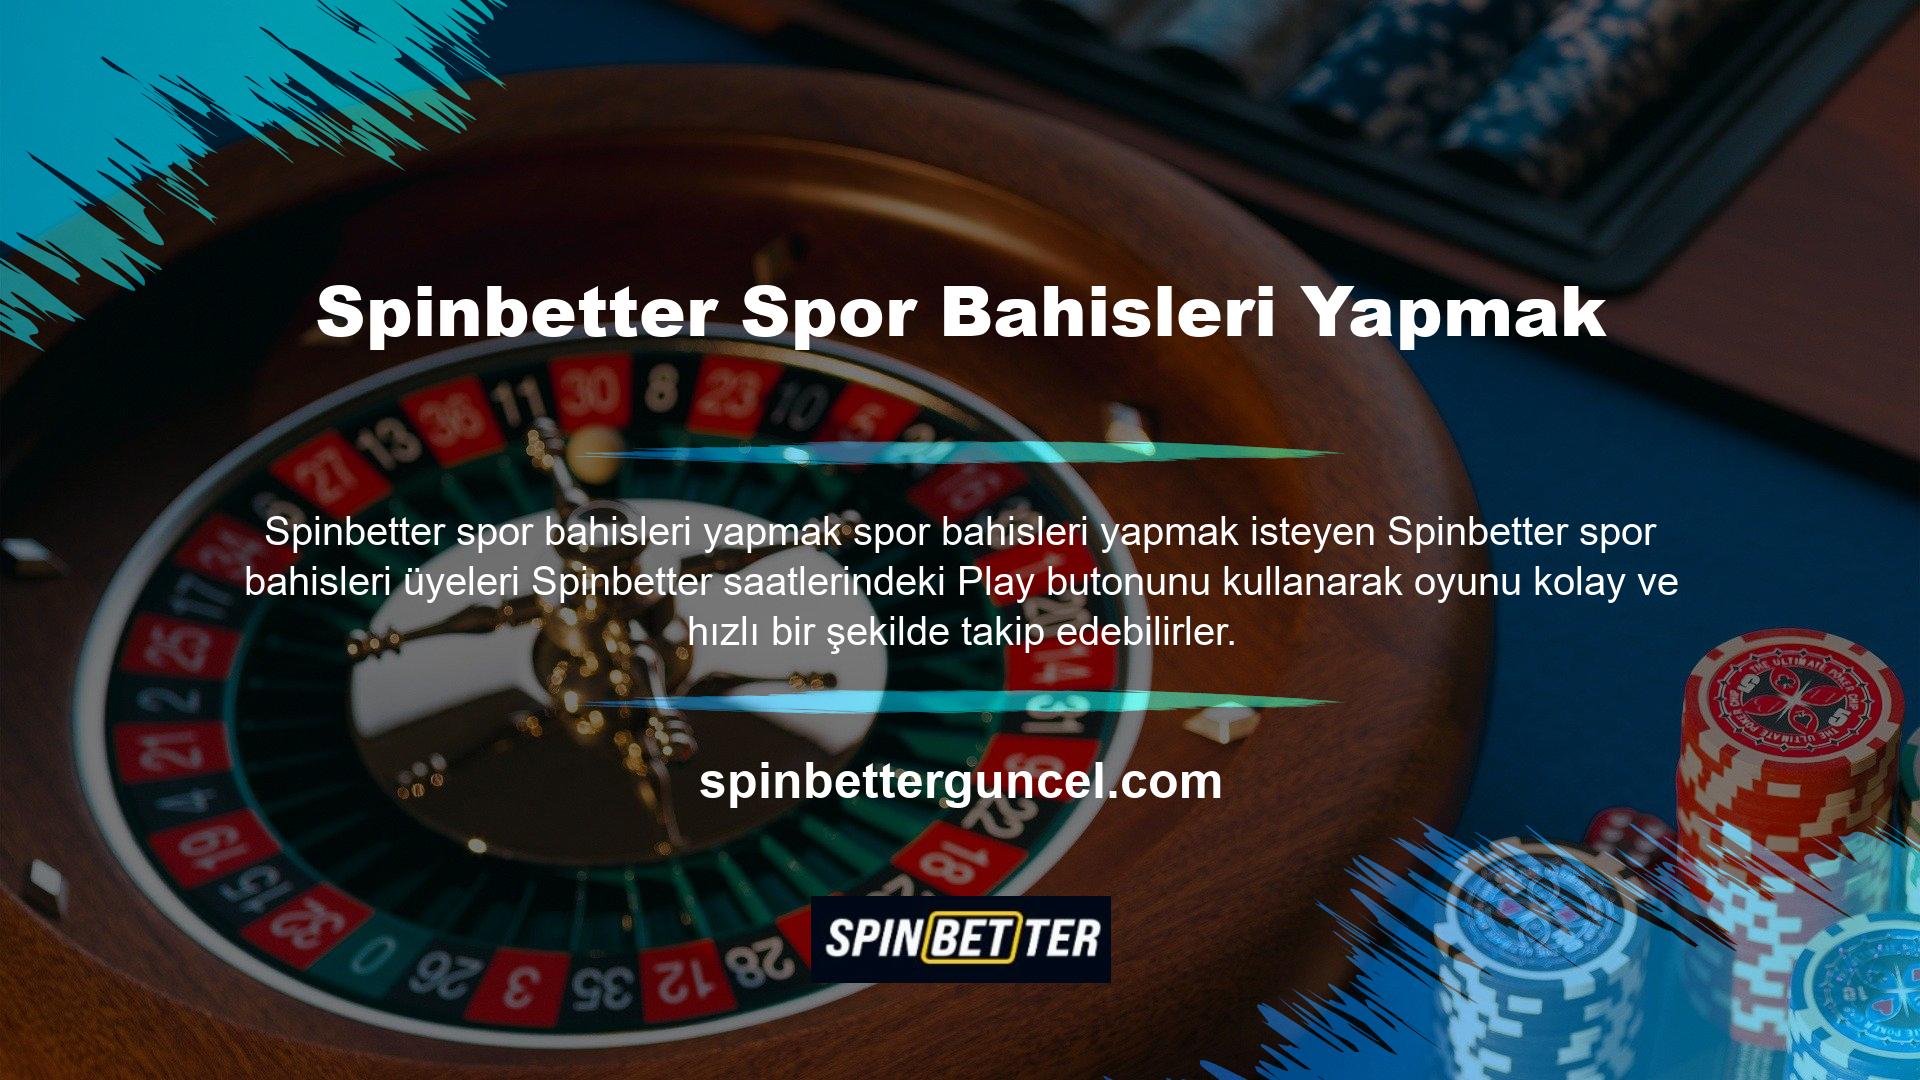 Spinbetter Sporda bahis oynayan üyelere ayrıca bu butonun aktif edildiği bilgisi verilecektir